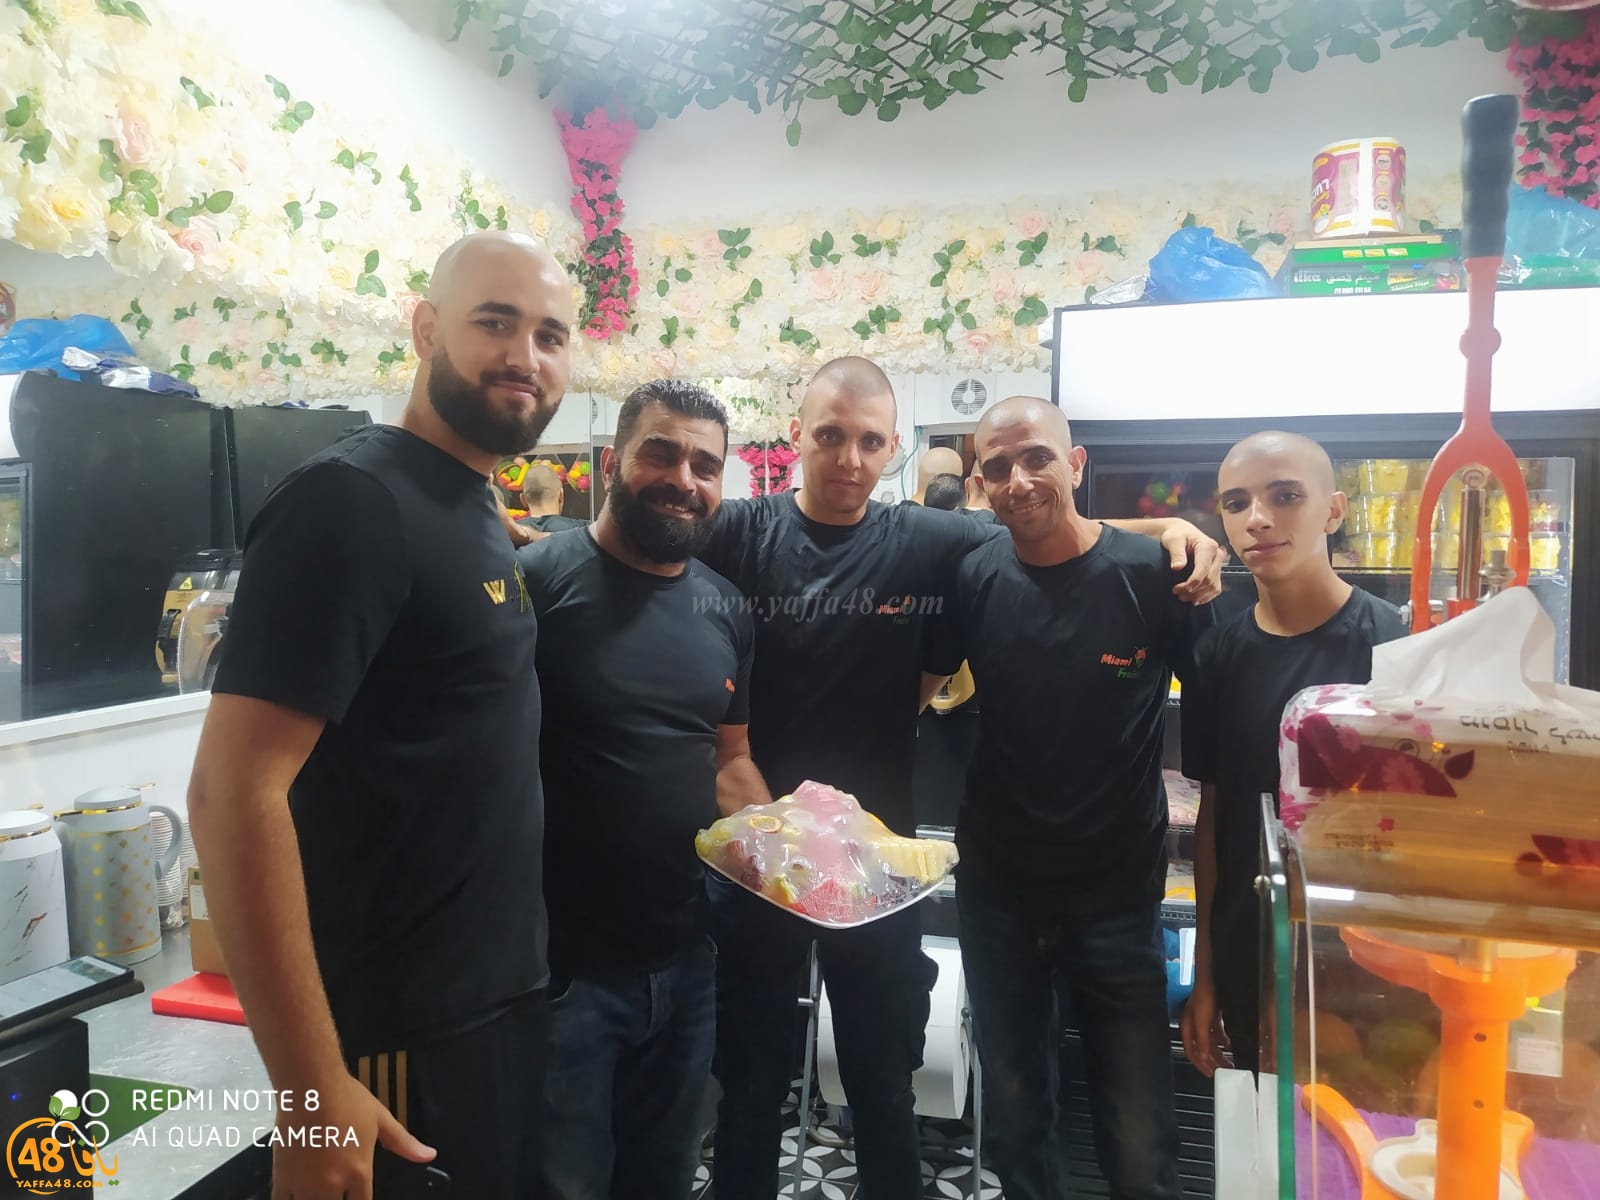 عصائر طبيعية وفواكه - افتتاح محل ميامي فروتس في يافا 